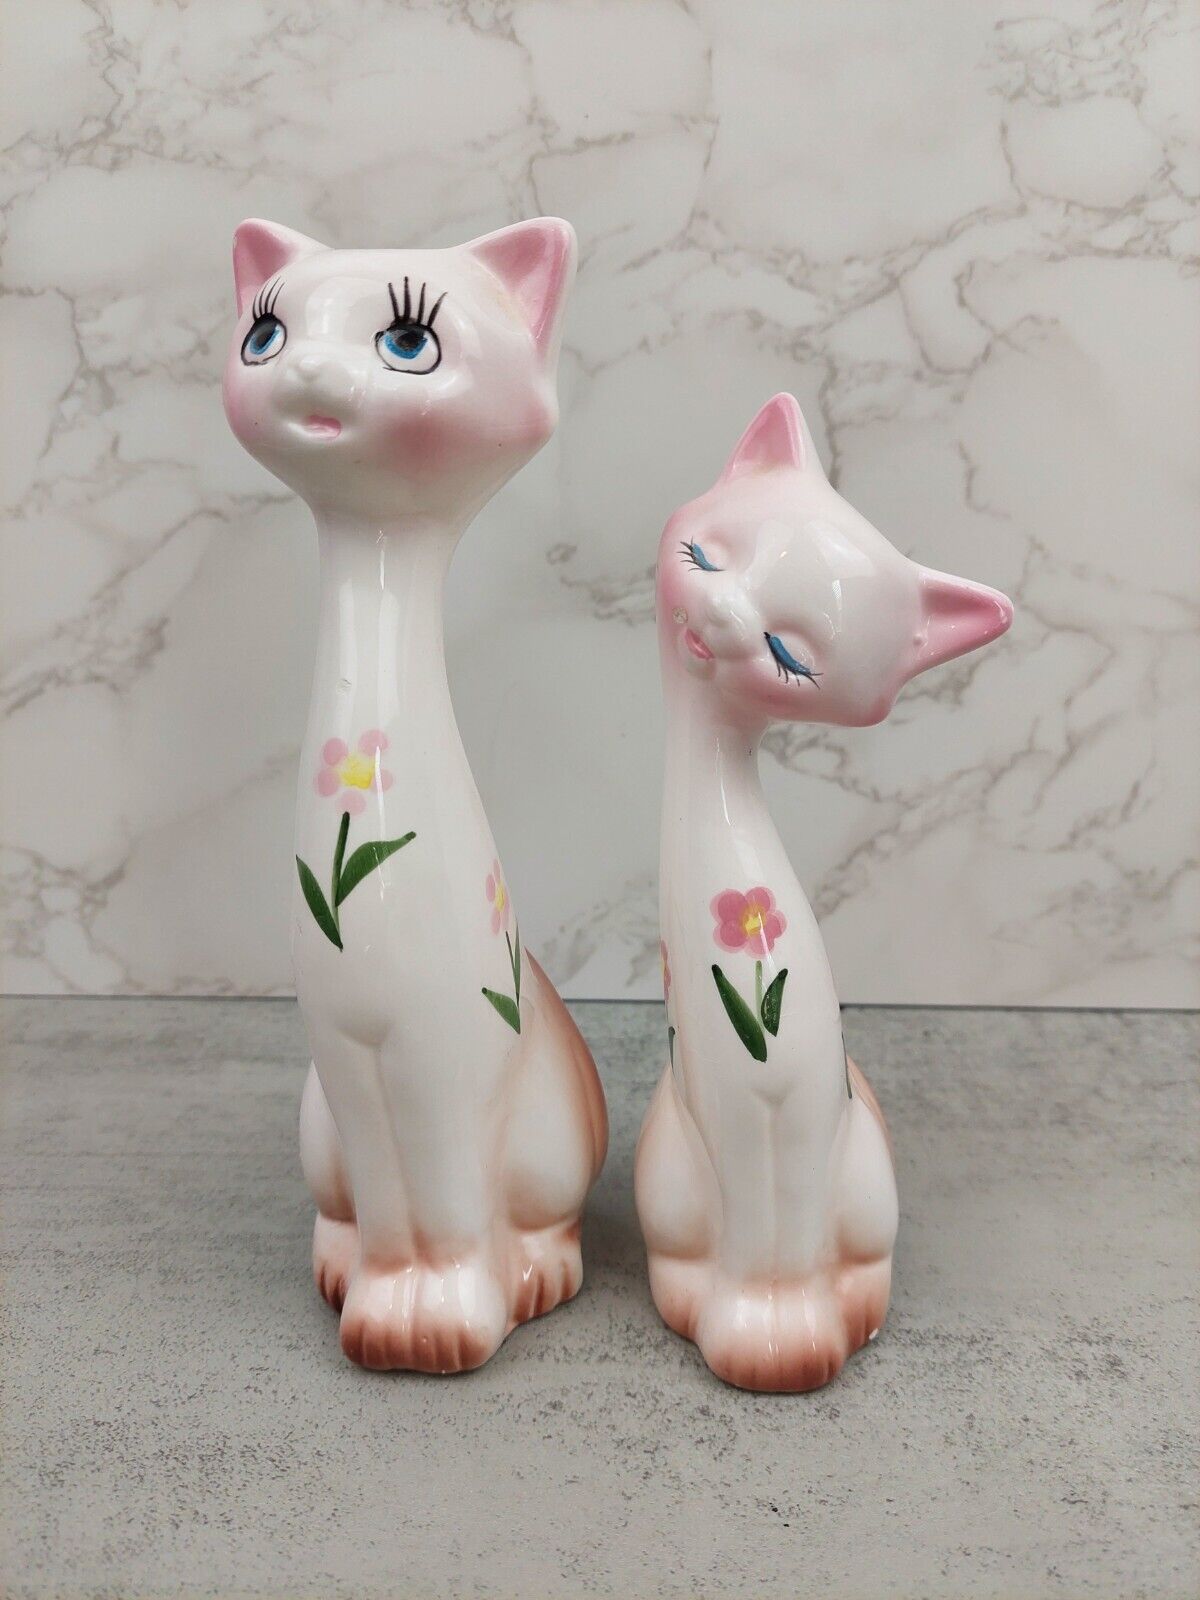 VTG Kitsch Ceramic Cat Figurine Pair Winking Floral Blue Eyes White Pink